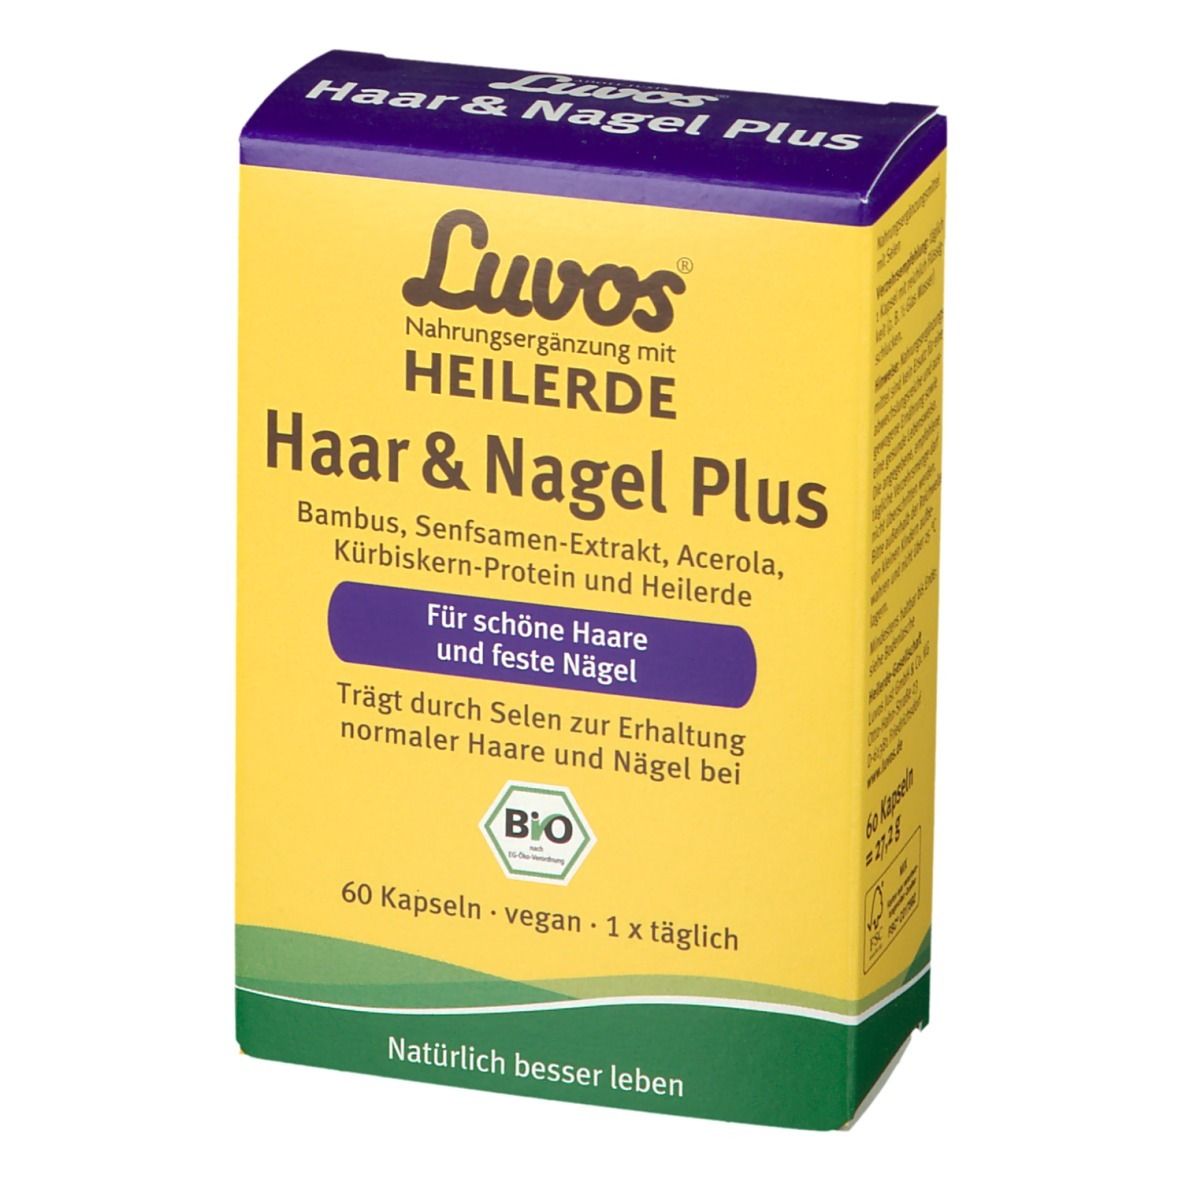 Luvos® Heilerde Bio Haar & Nagel Plus